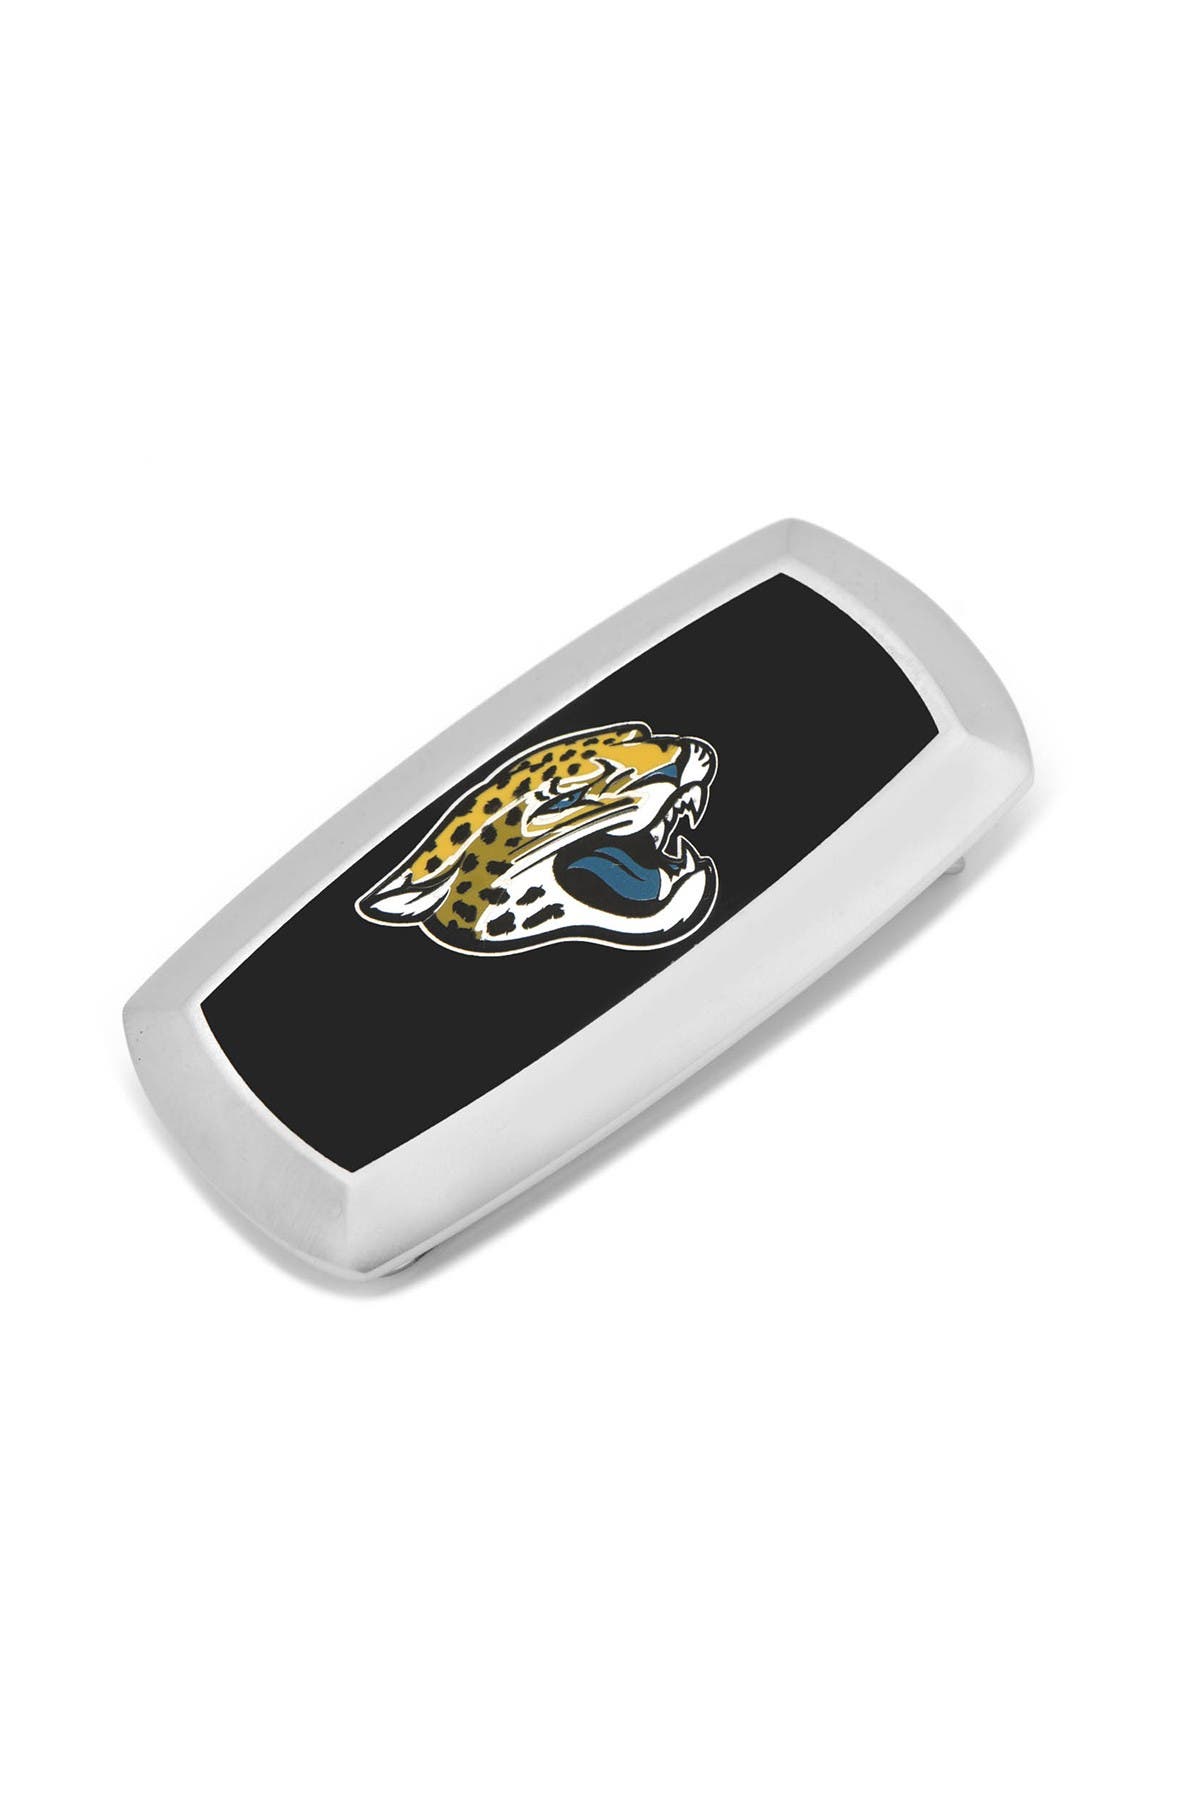 Зажим для галстука NFL Jacksonville Jaguars Cufflinks, Inc.